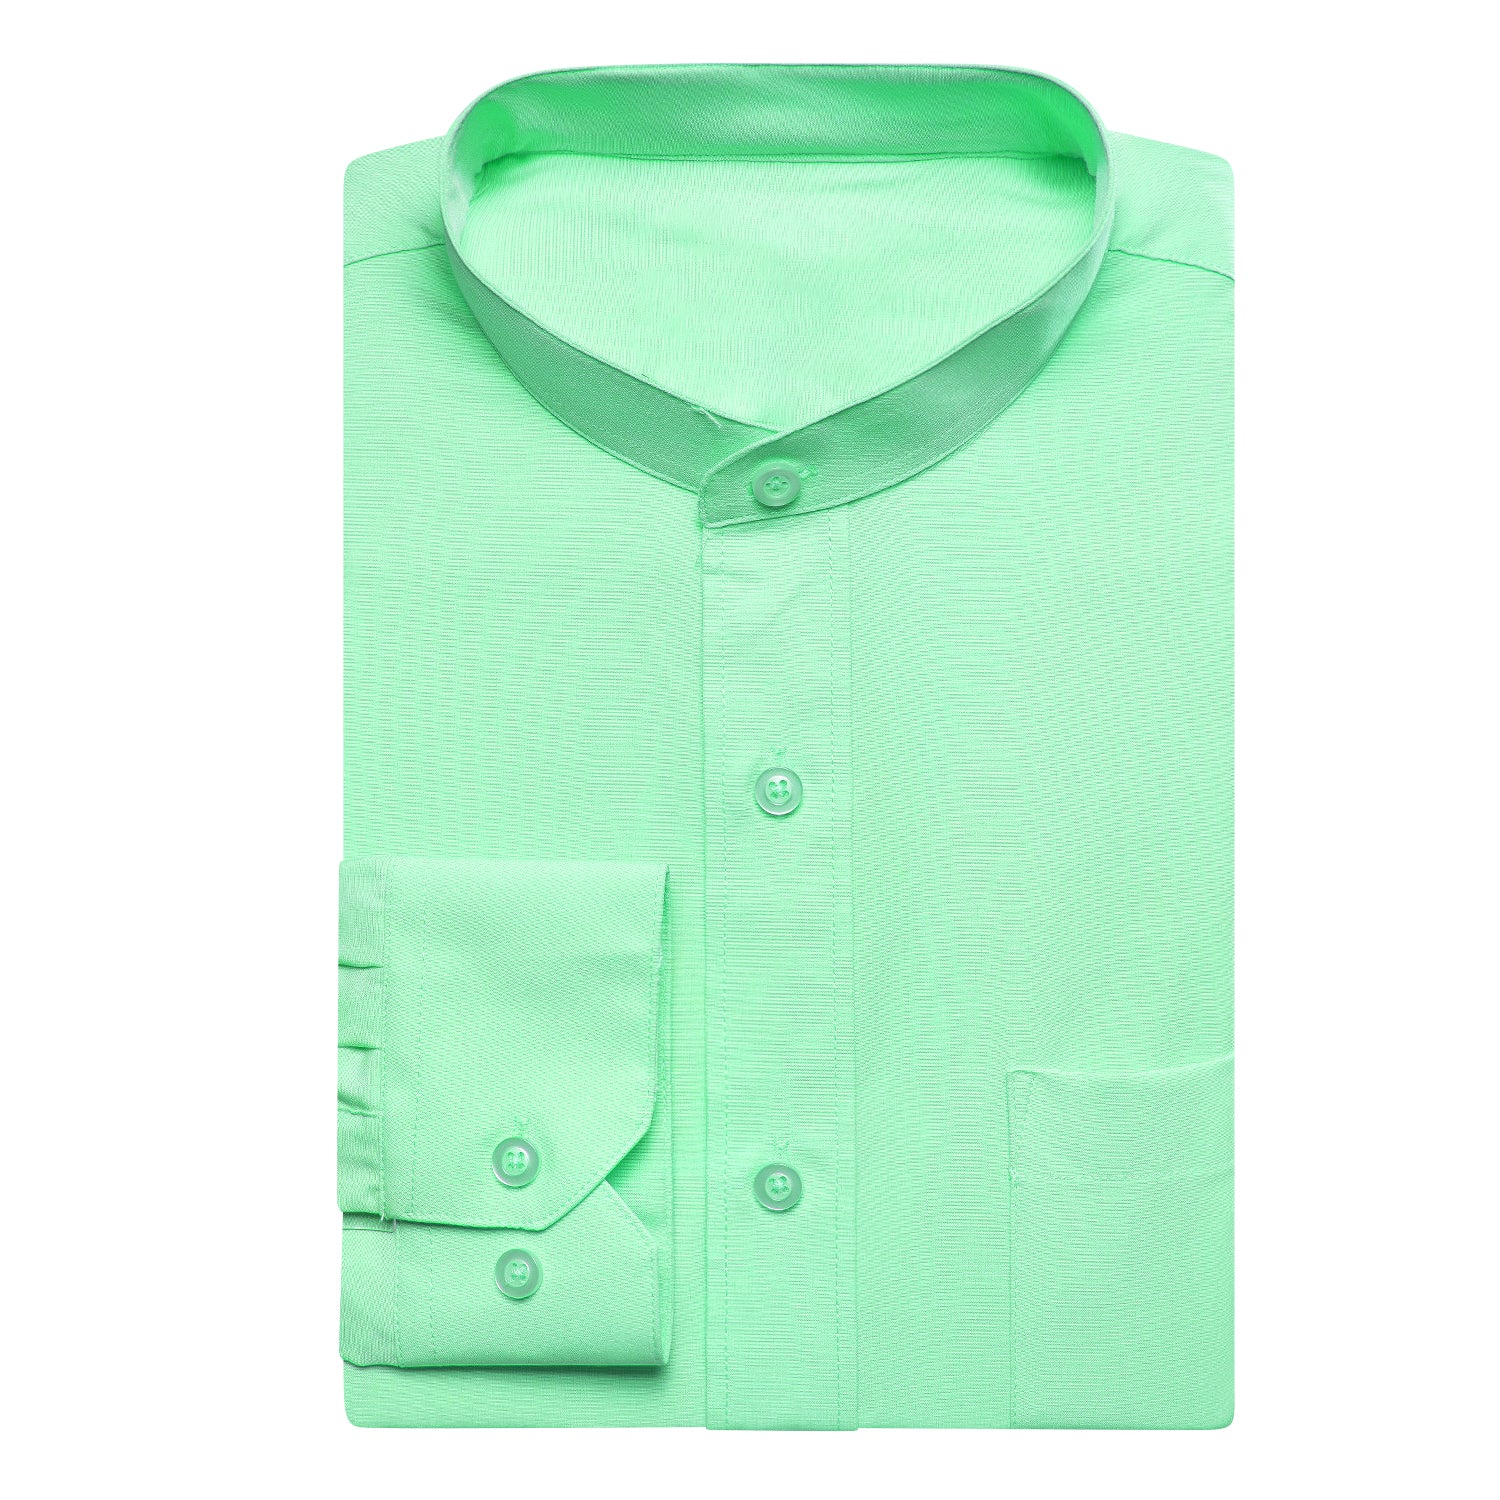 Grass Green Solid Men's Long Sleeve Dress Shirt